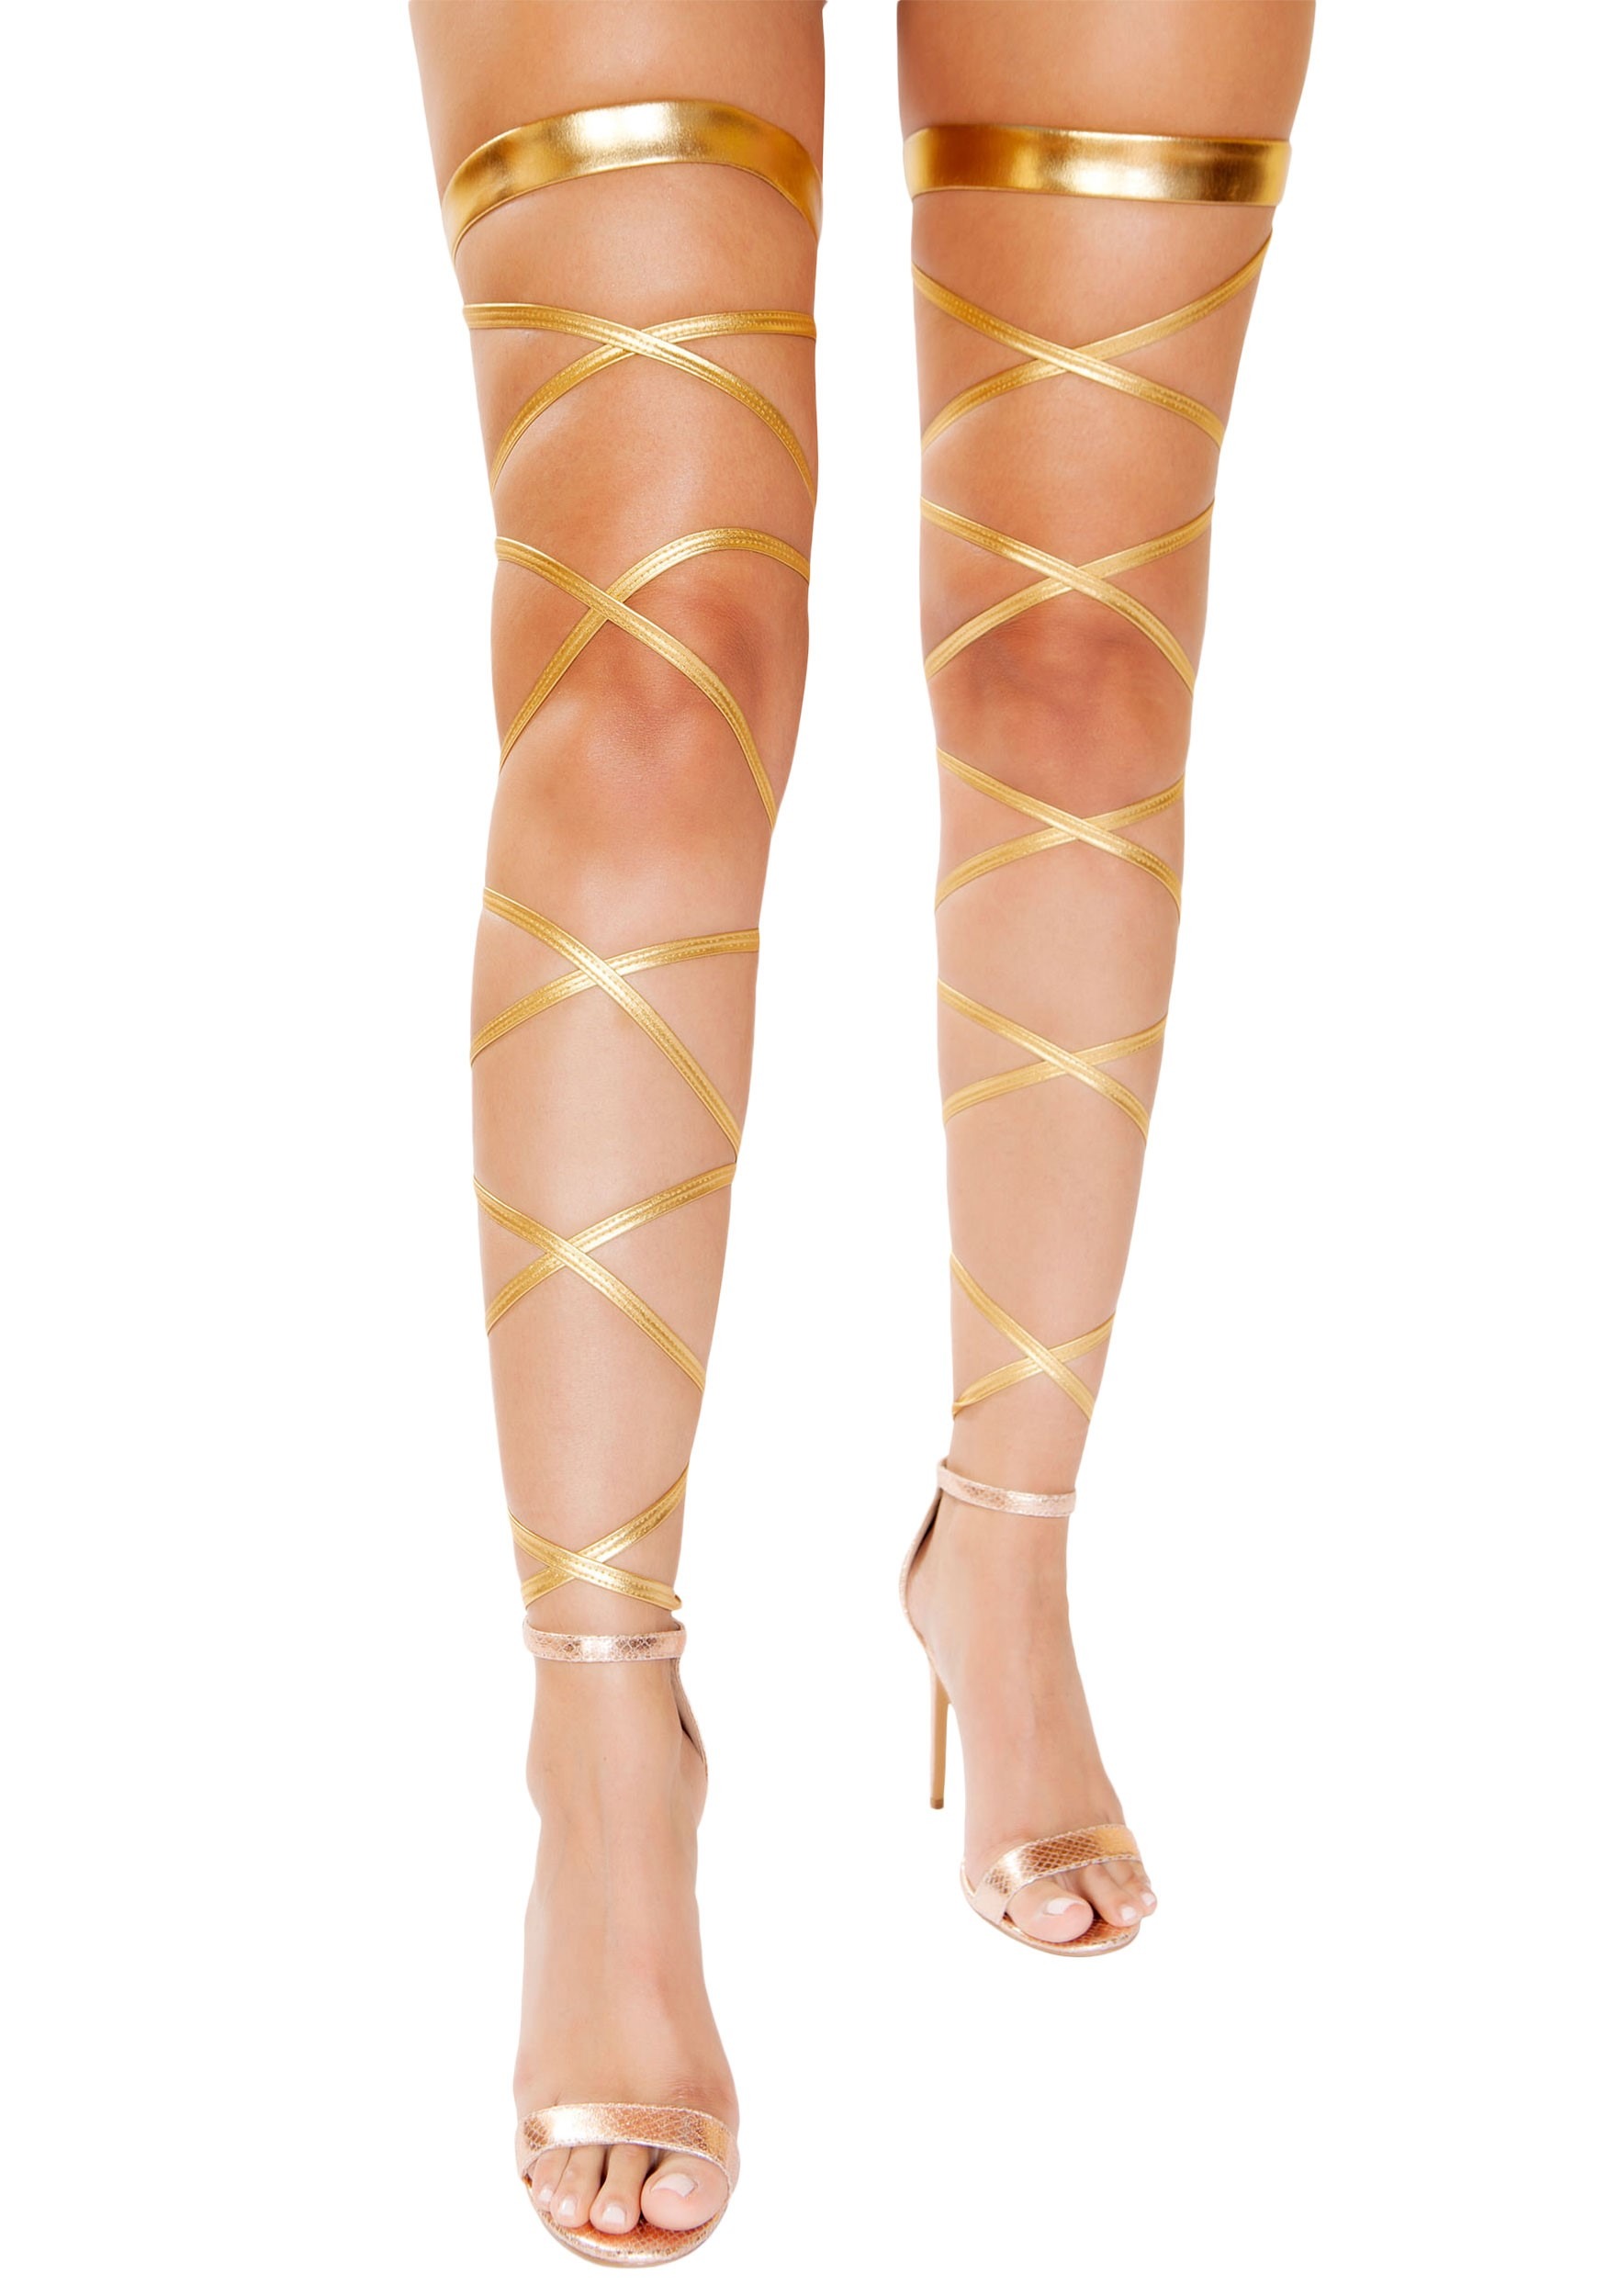 Goddess Leg Wraps for Women